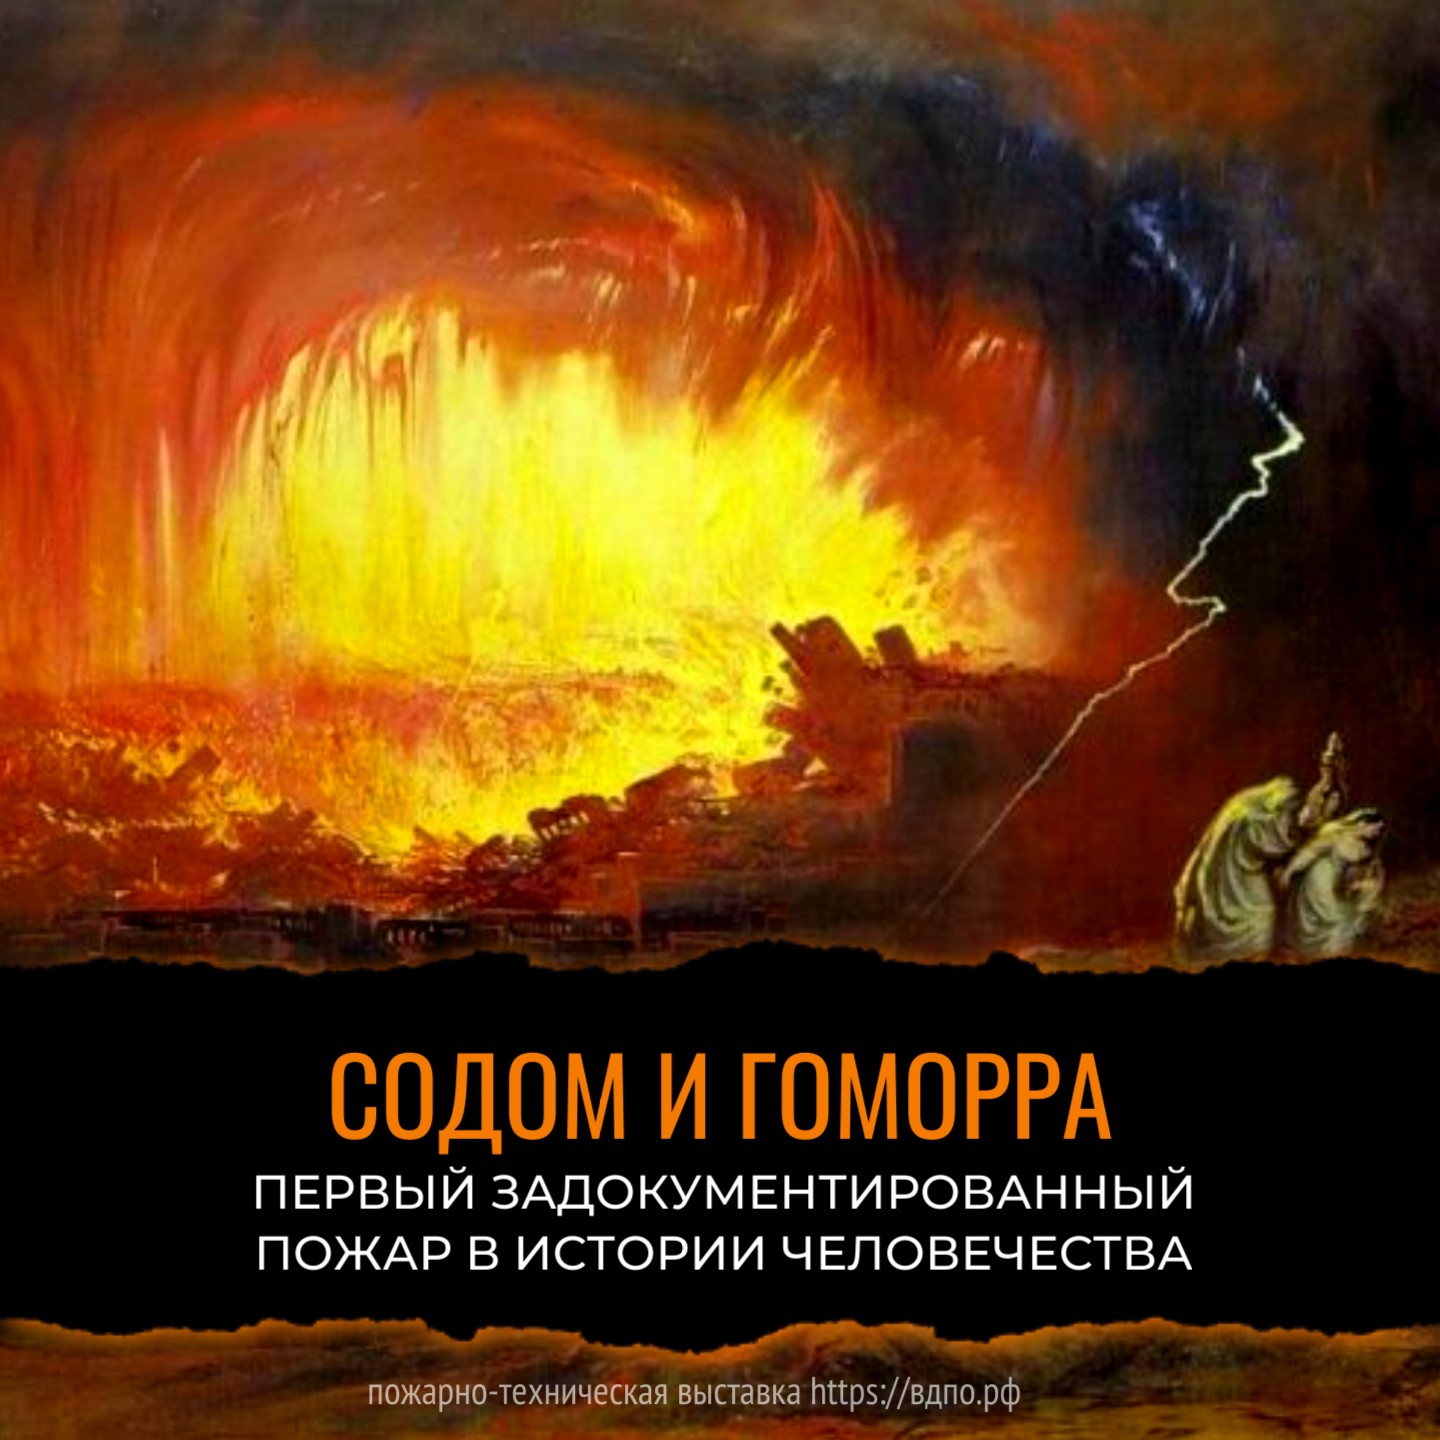 Первый задокументированный пожар в истории Человечества  Первый задокументированный и самый разрушительный пожар произошел около 1400 до н.э. Два......